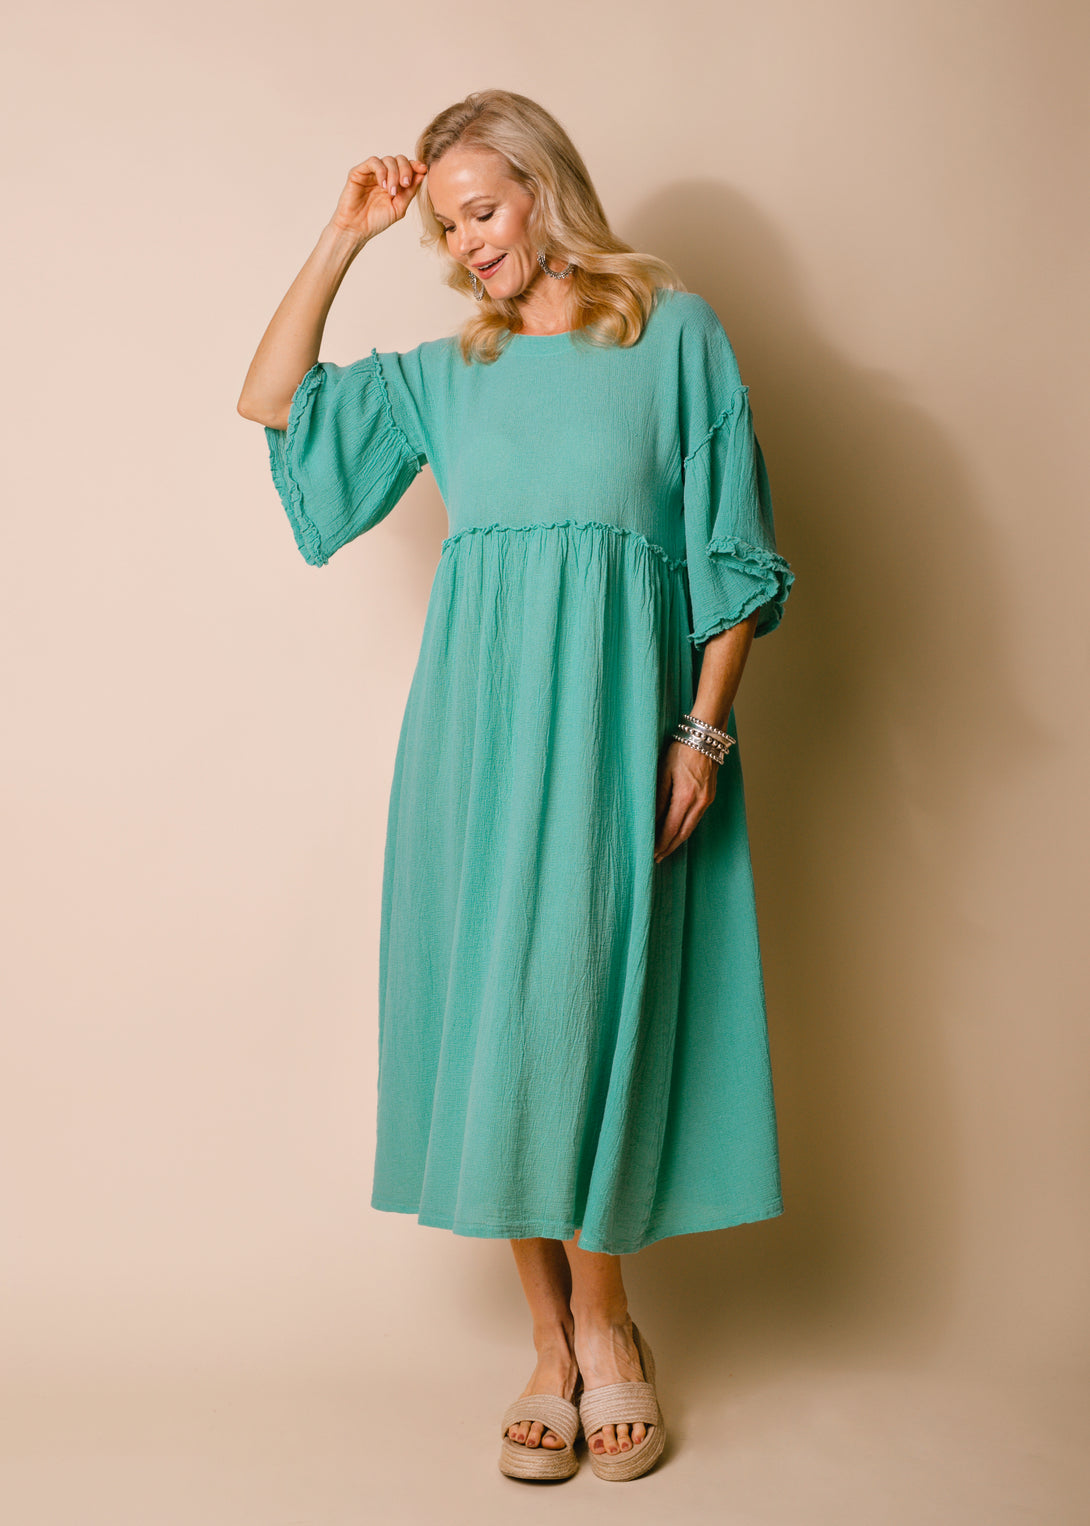 Hira Linen Blend Dress in Sea Green - Imagine Fashion